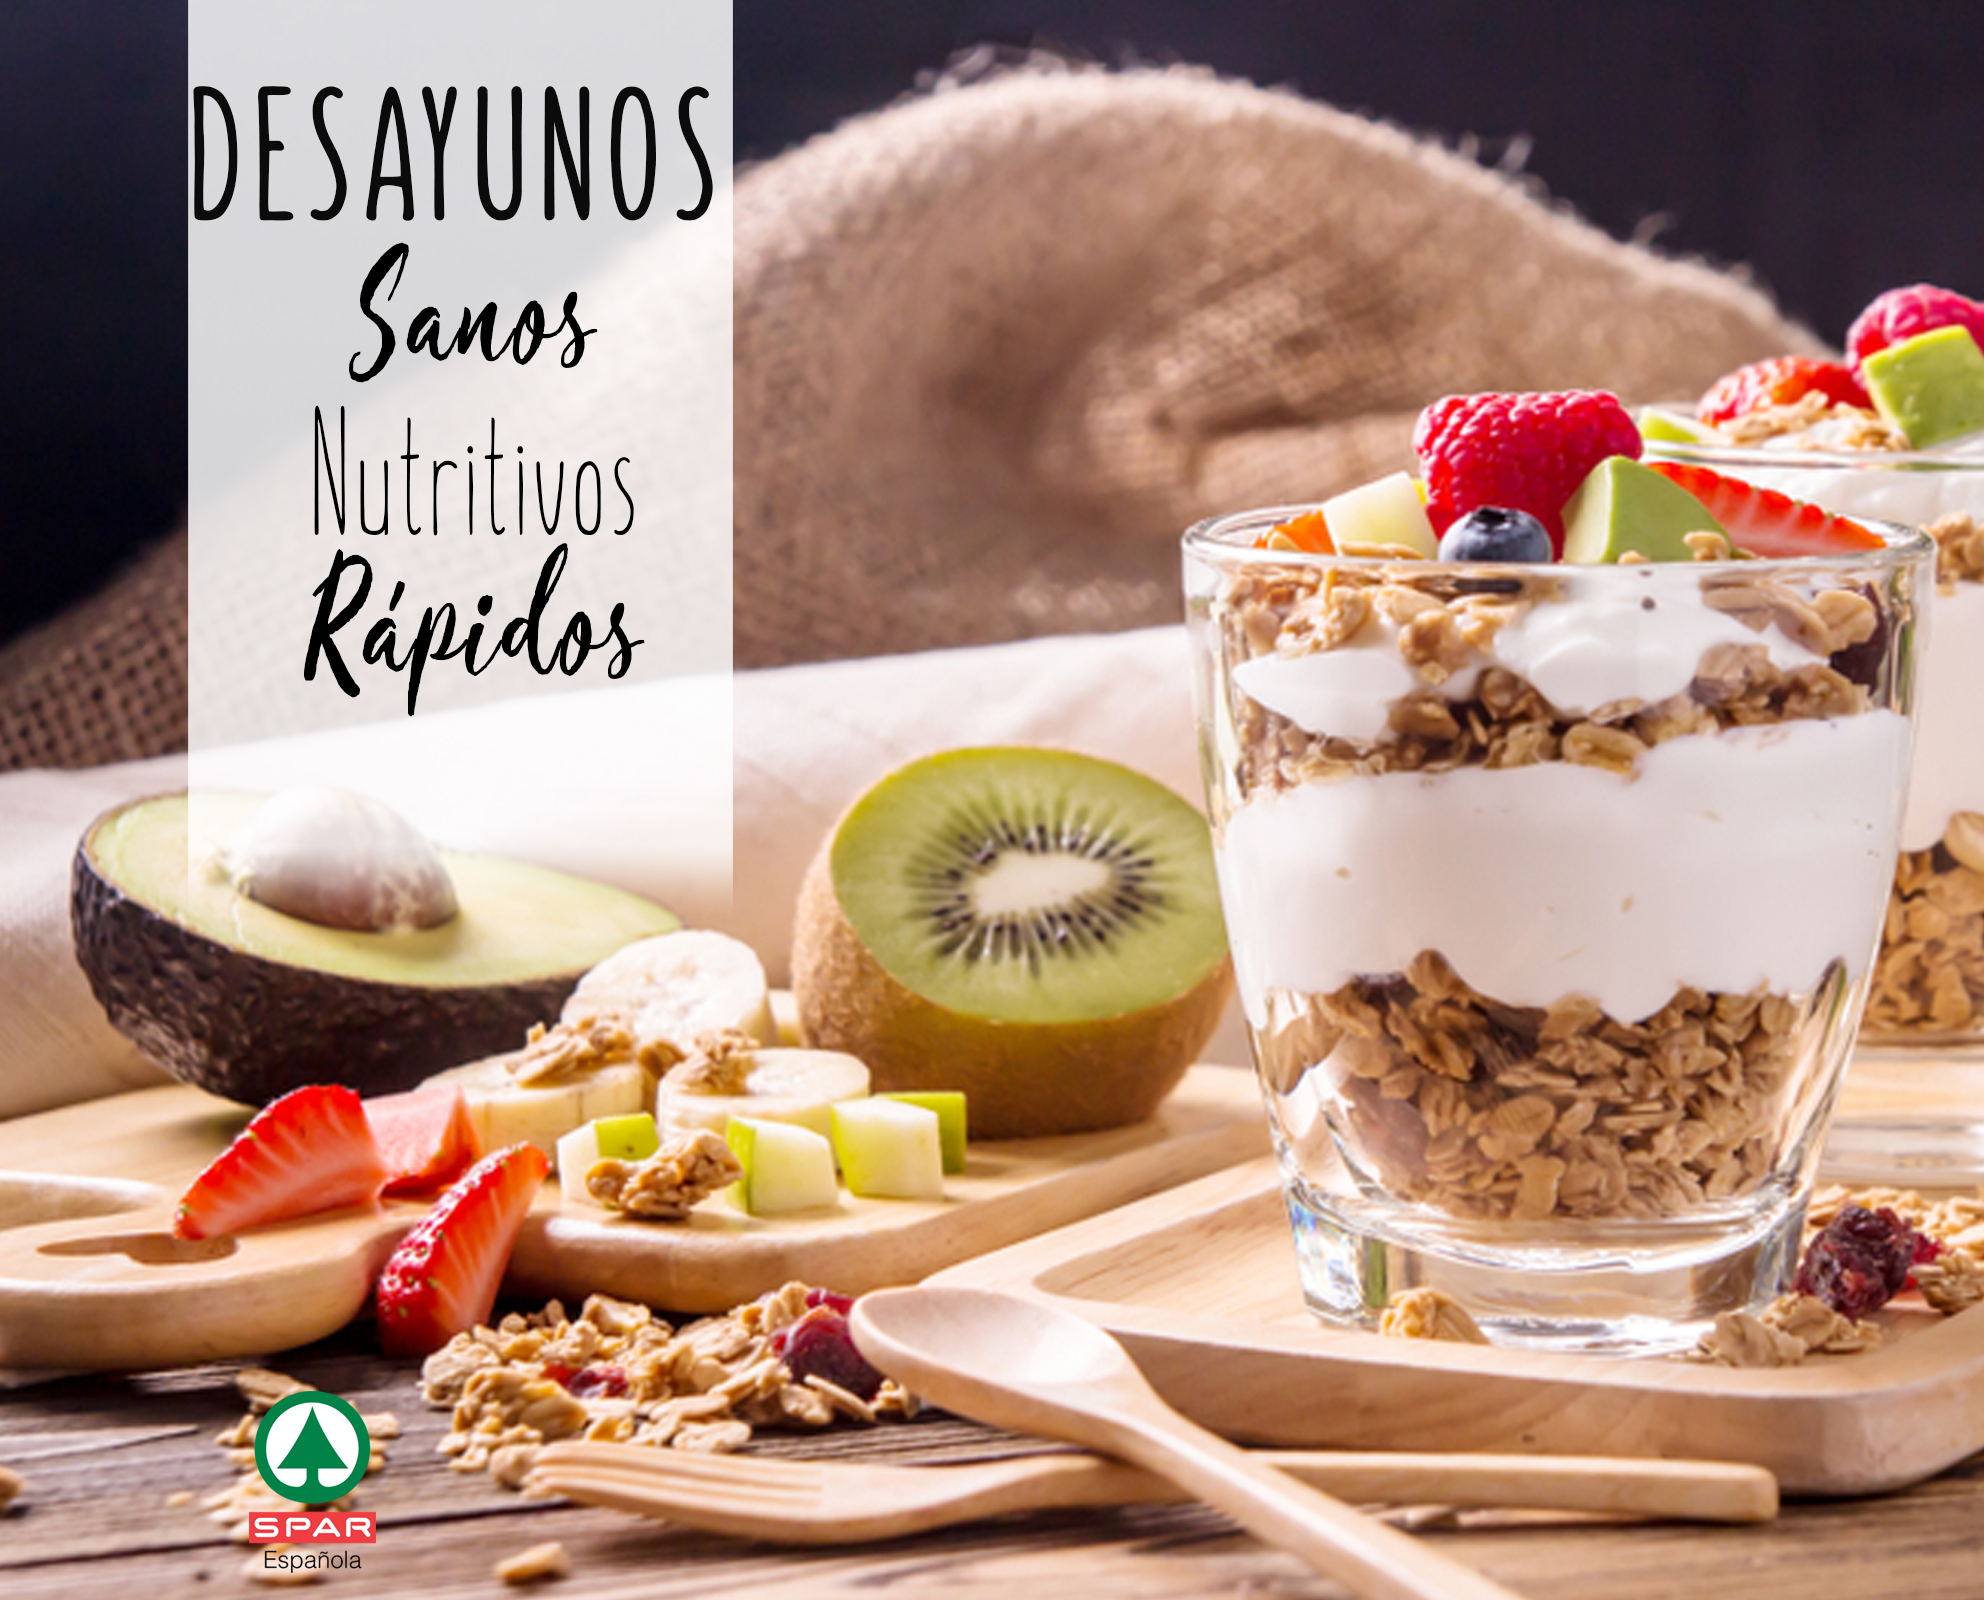 DESAYUNOS SANOS, NUTRITIVOS Y FÁCILES DE PREPARAR. - SPAR